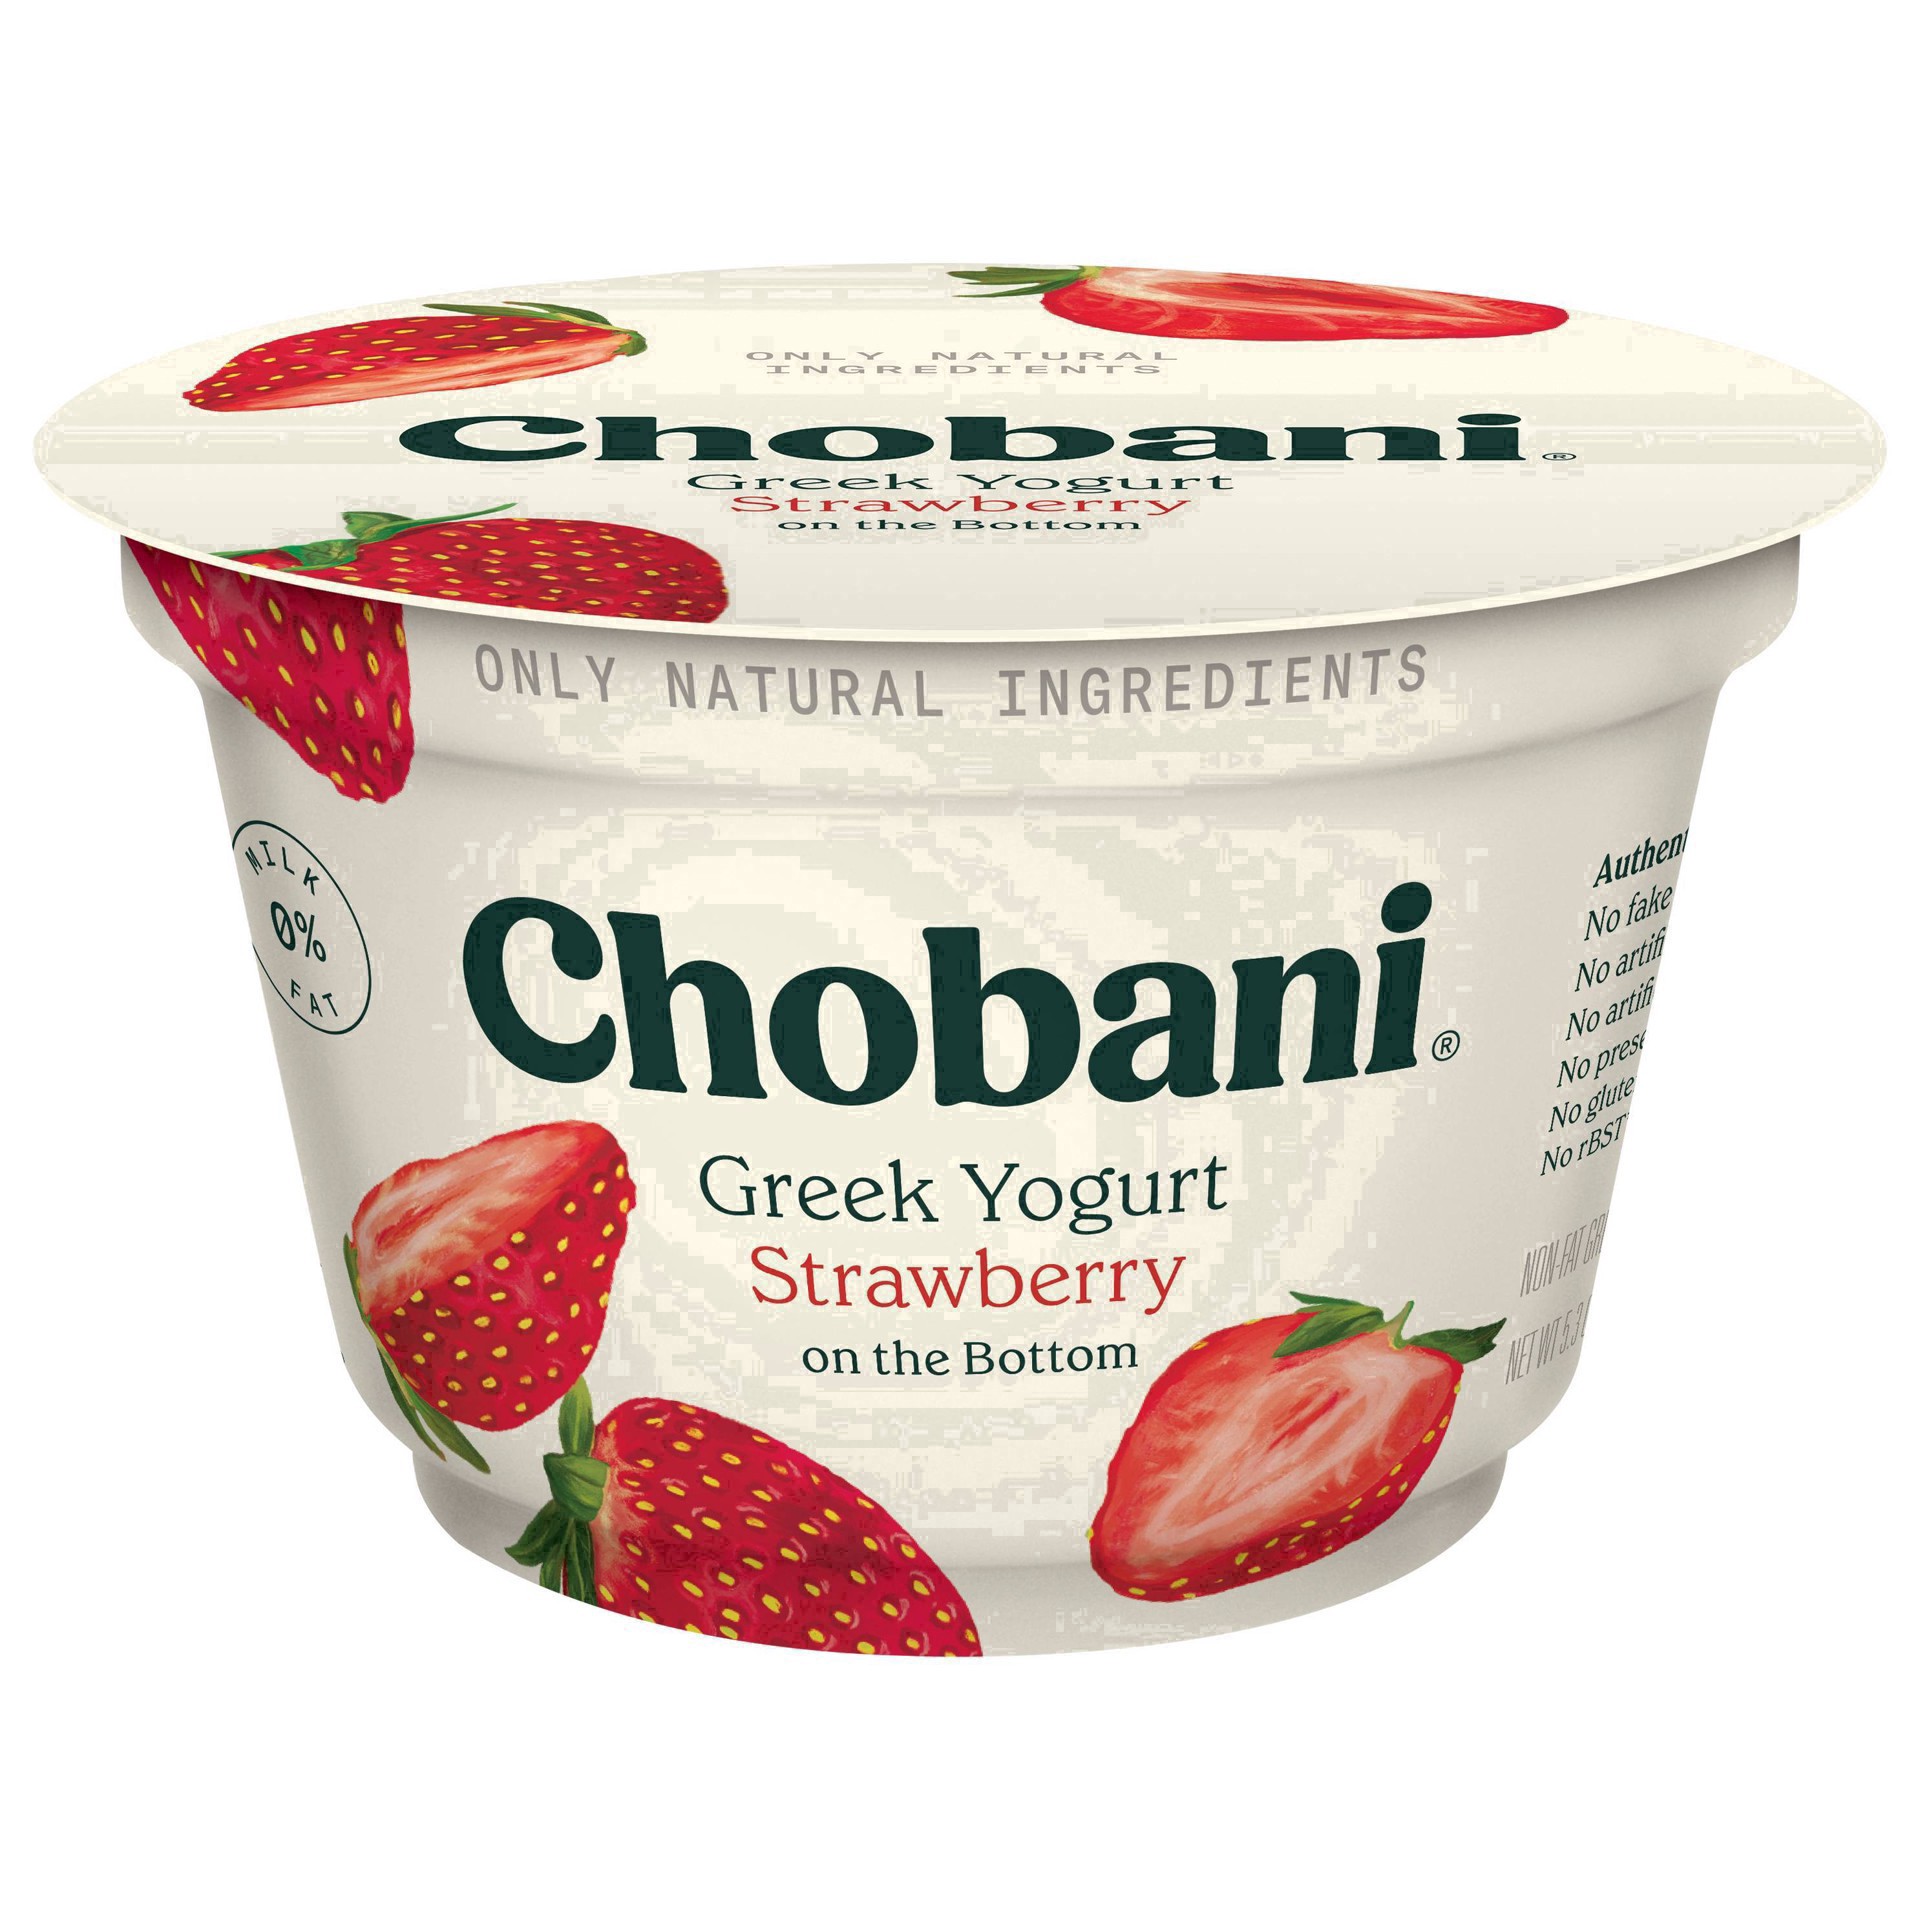 slide 6 of 83, Chobani Strawberry on the Bottom Nonfat Greek Yogurt - 5.3oz, 5.3 oz